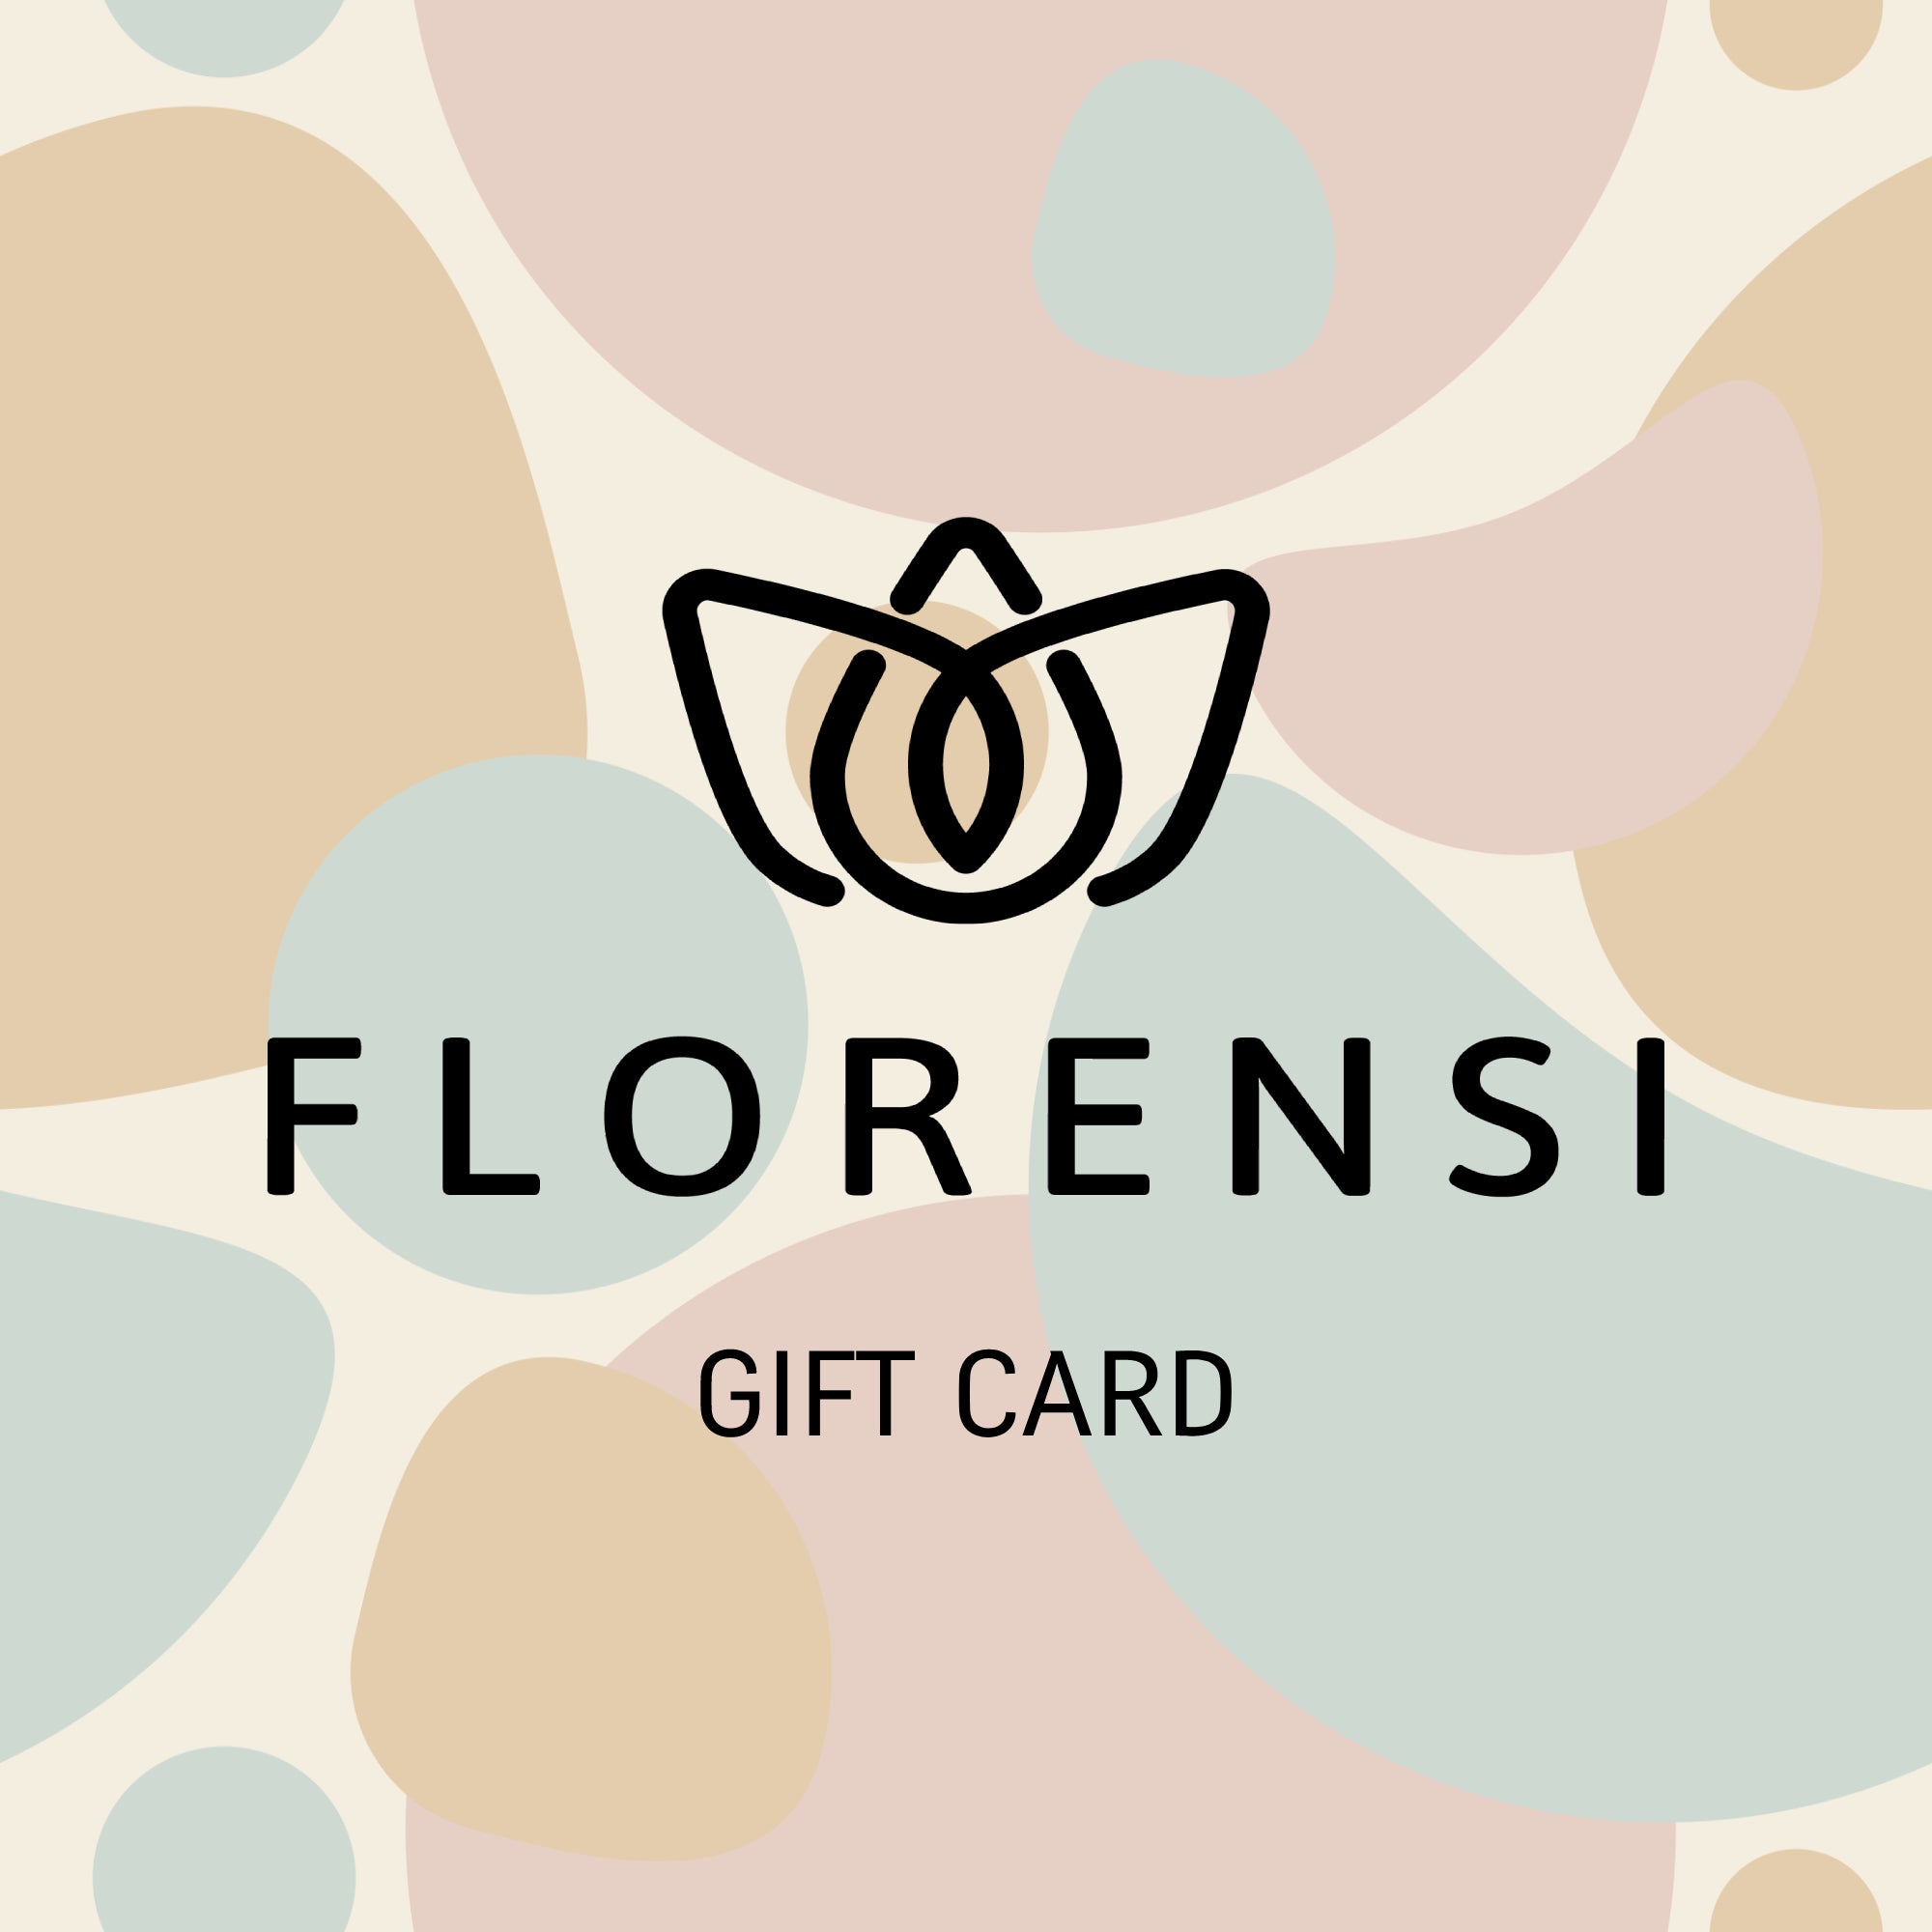 Florensi Gift Card - Florensi